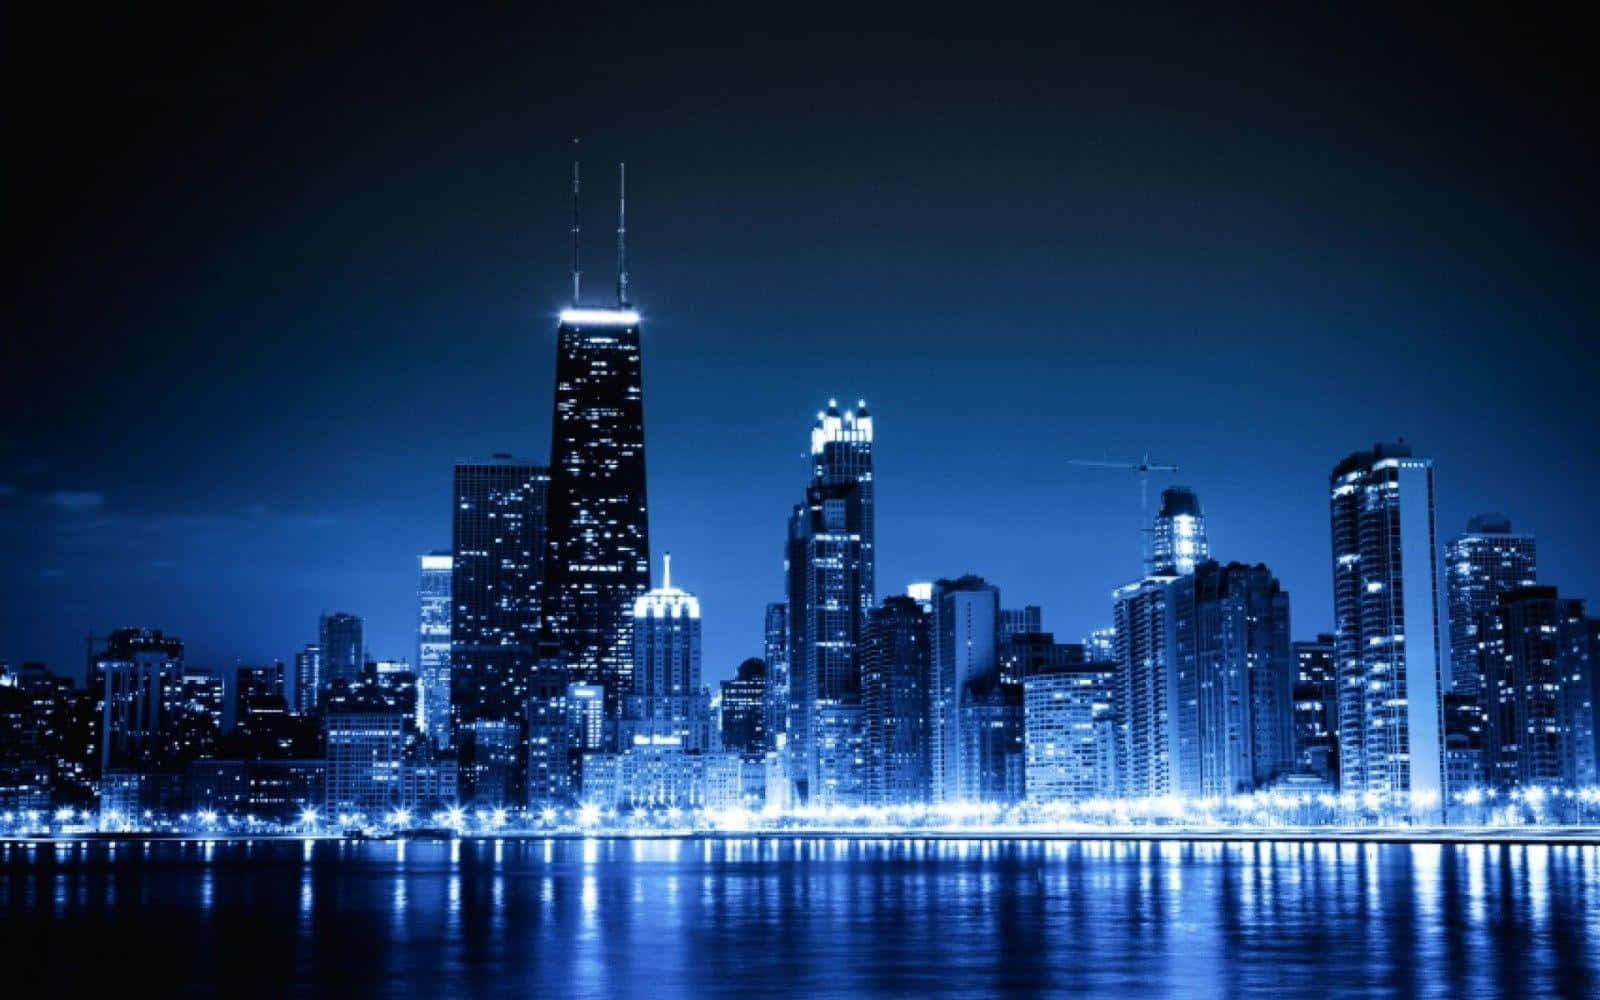 Chicagoskyline Bei Nacht Mit Blauen Lichtern.